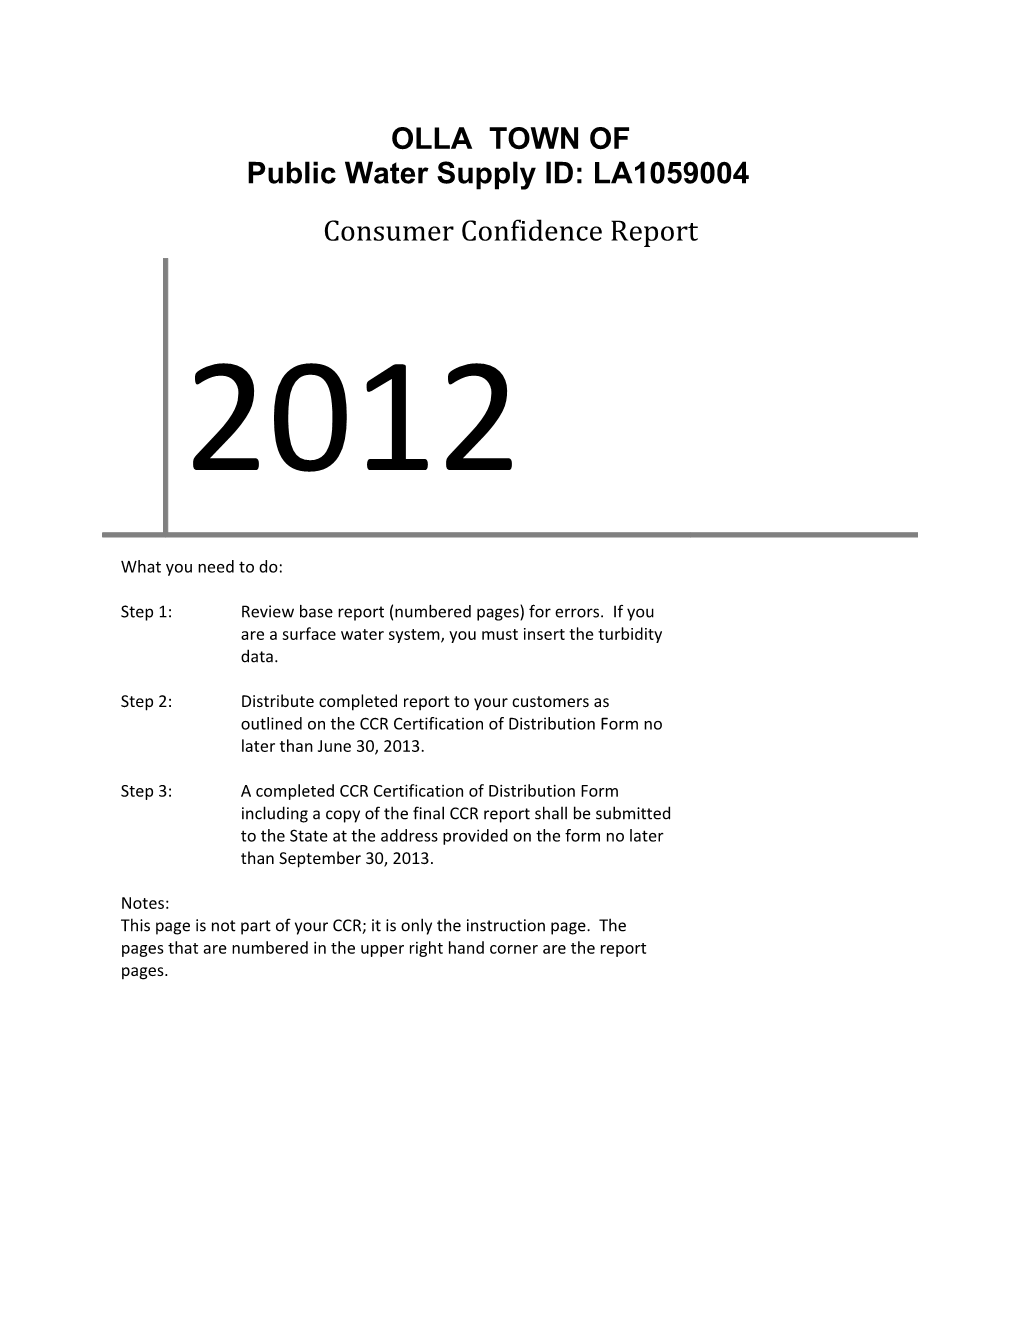 Public Water Supply ID: LA1059004